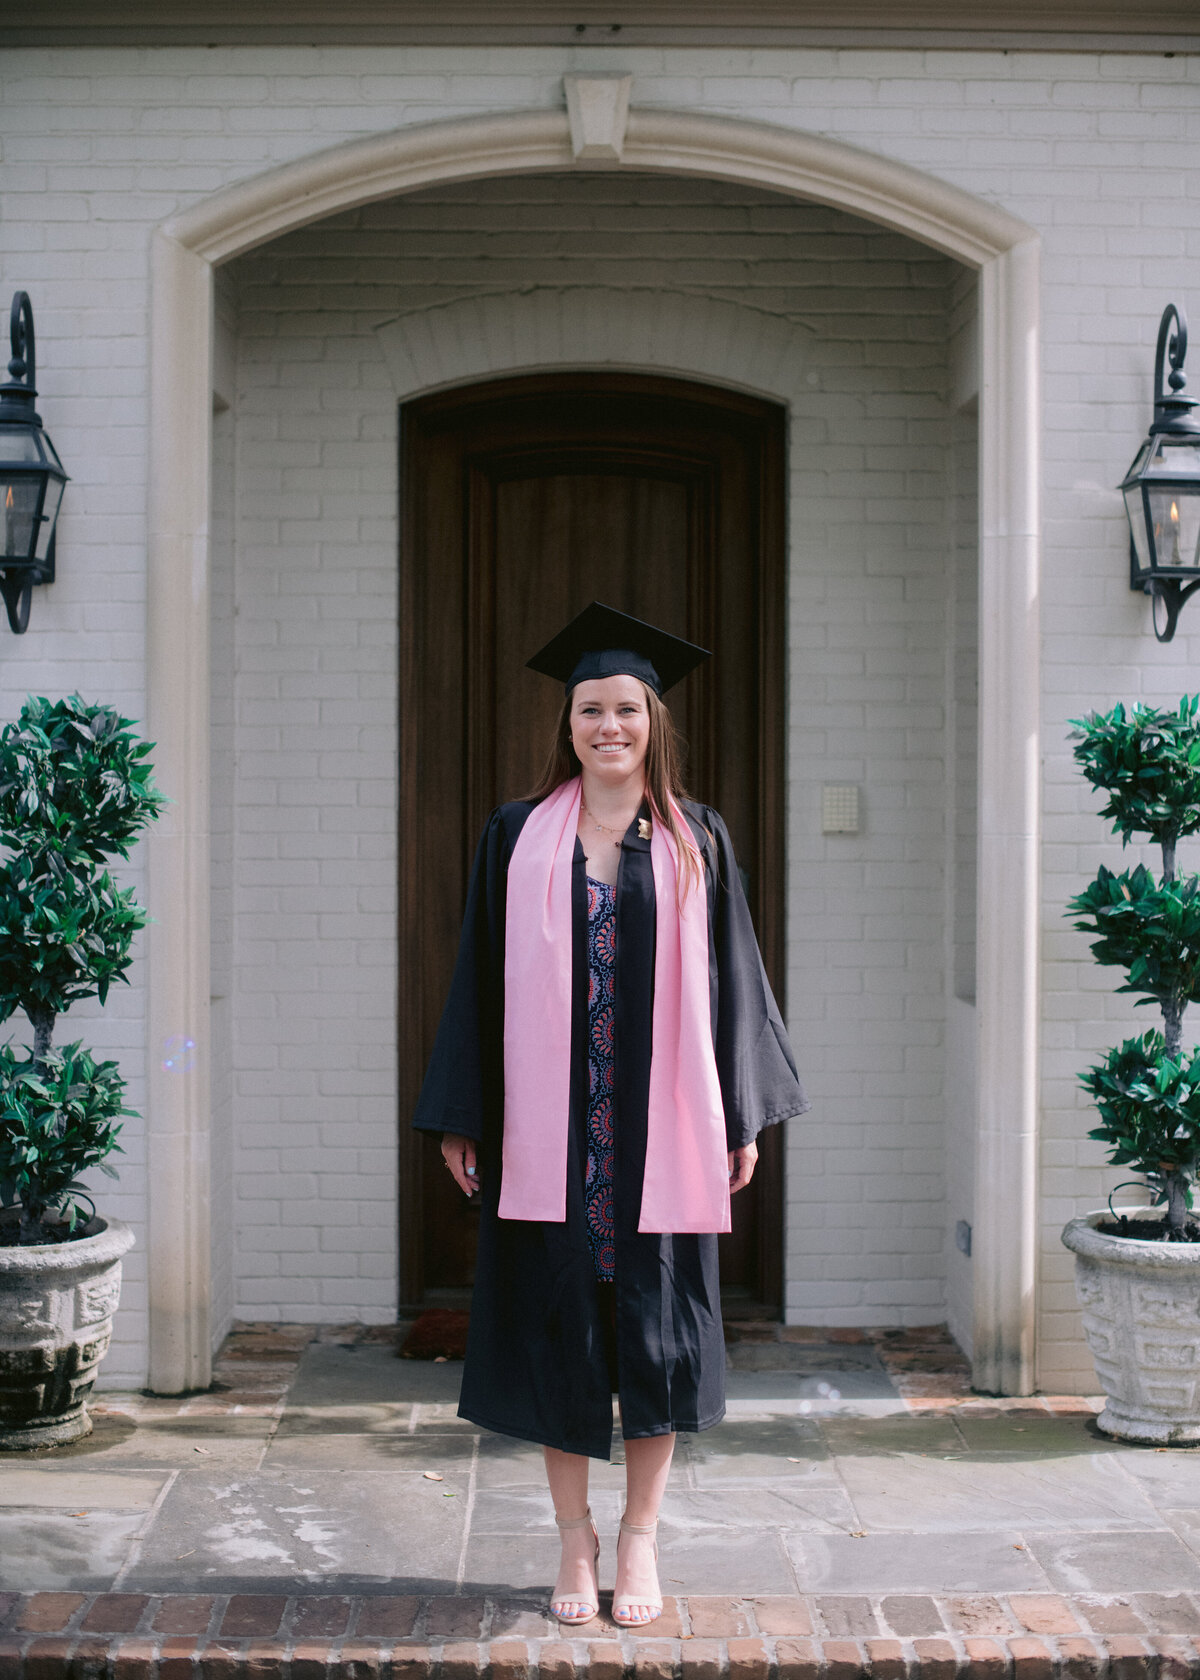 Senior graduation photos taken in Houston during soical distant graduation